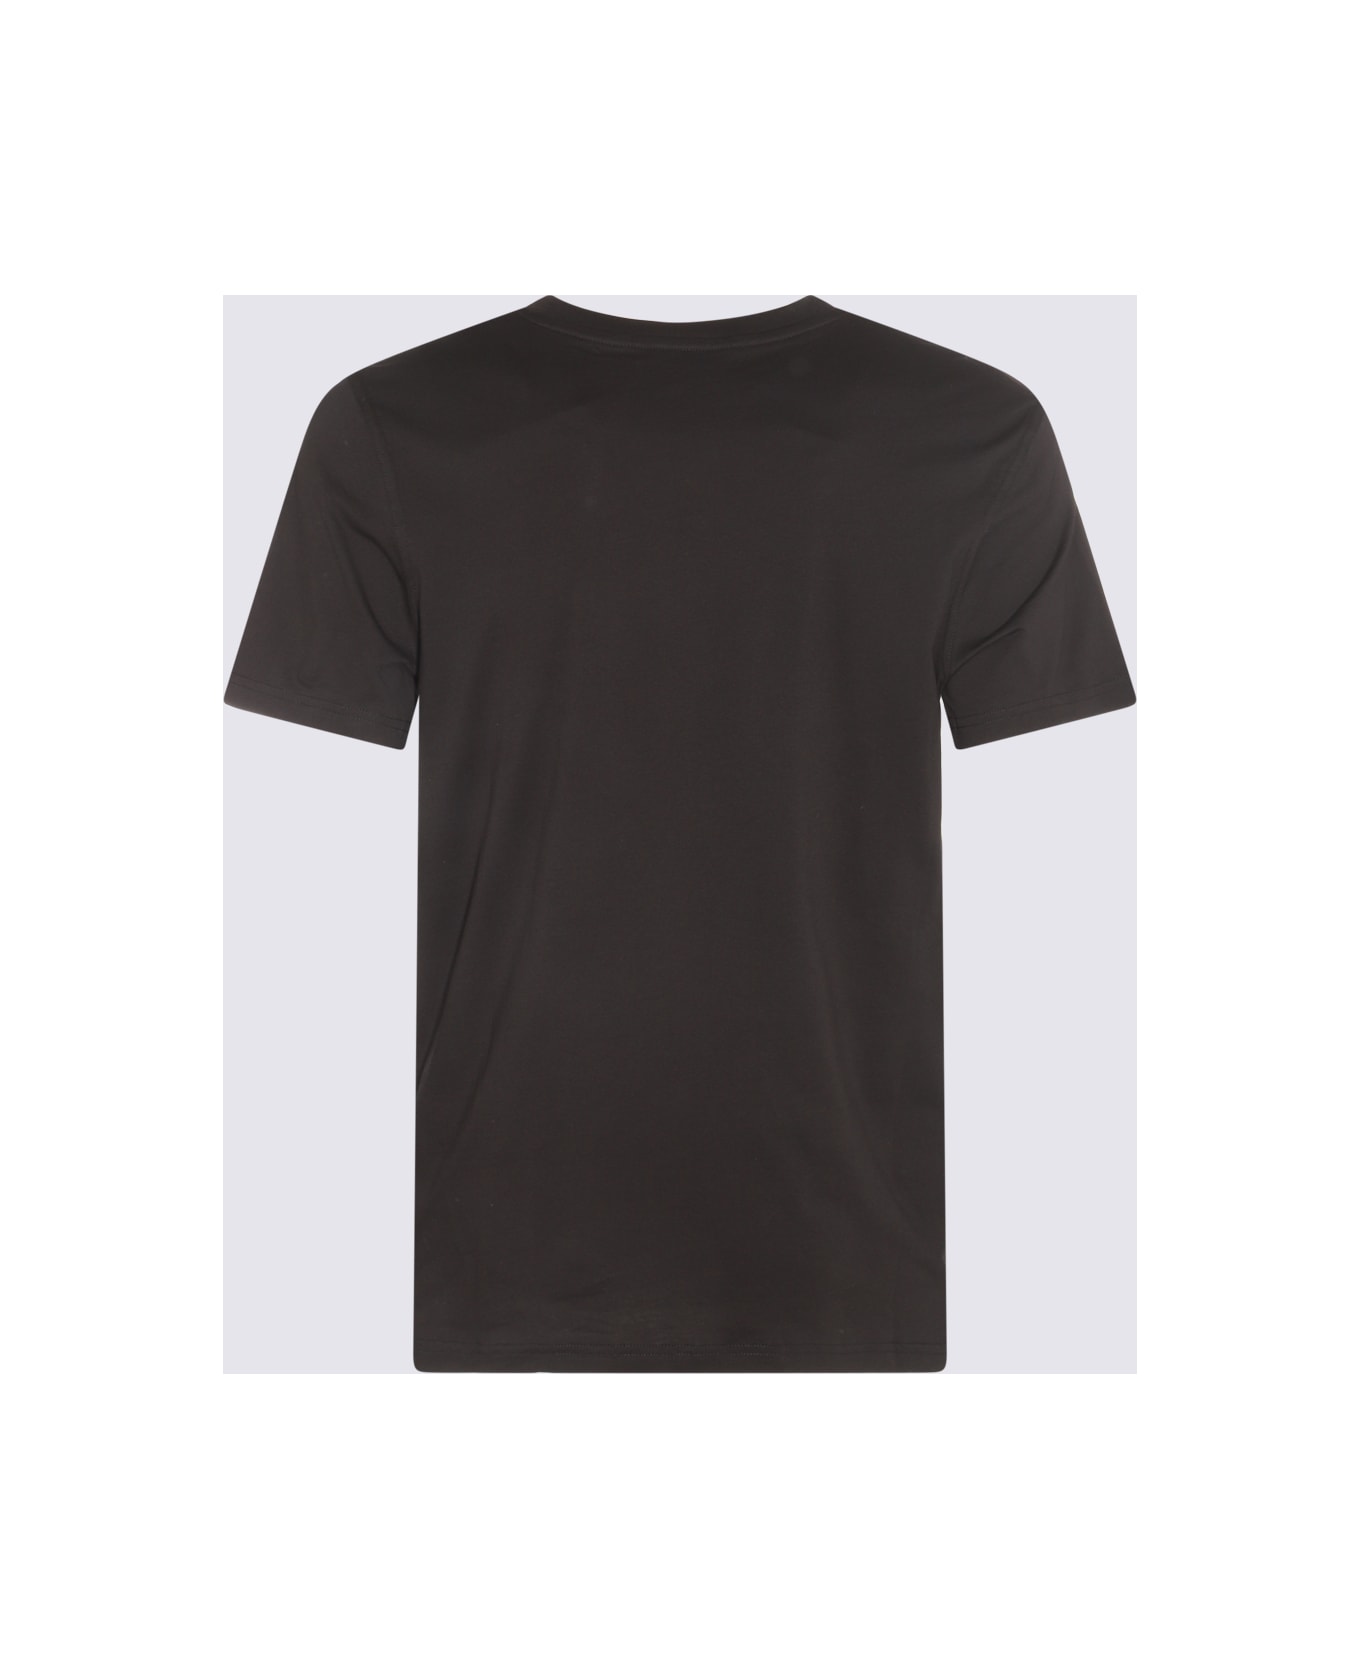 Moschino Black Cotton T-shirt - Black